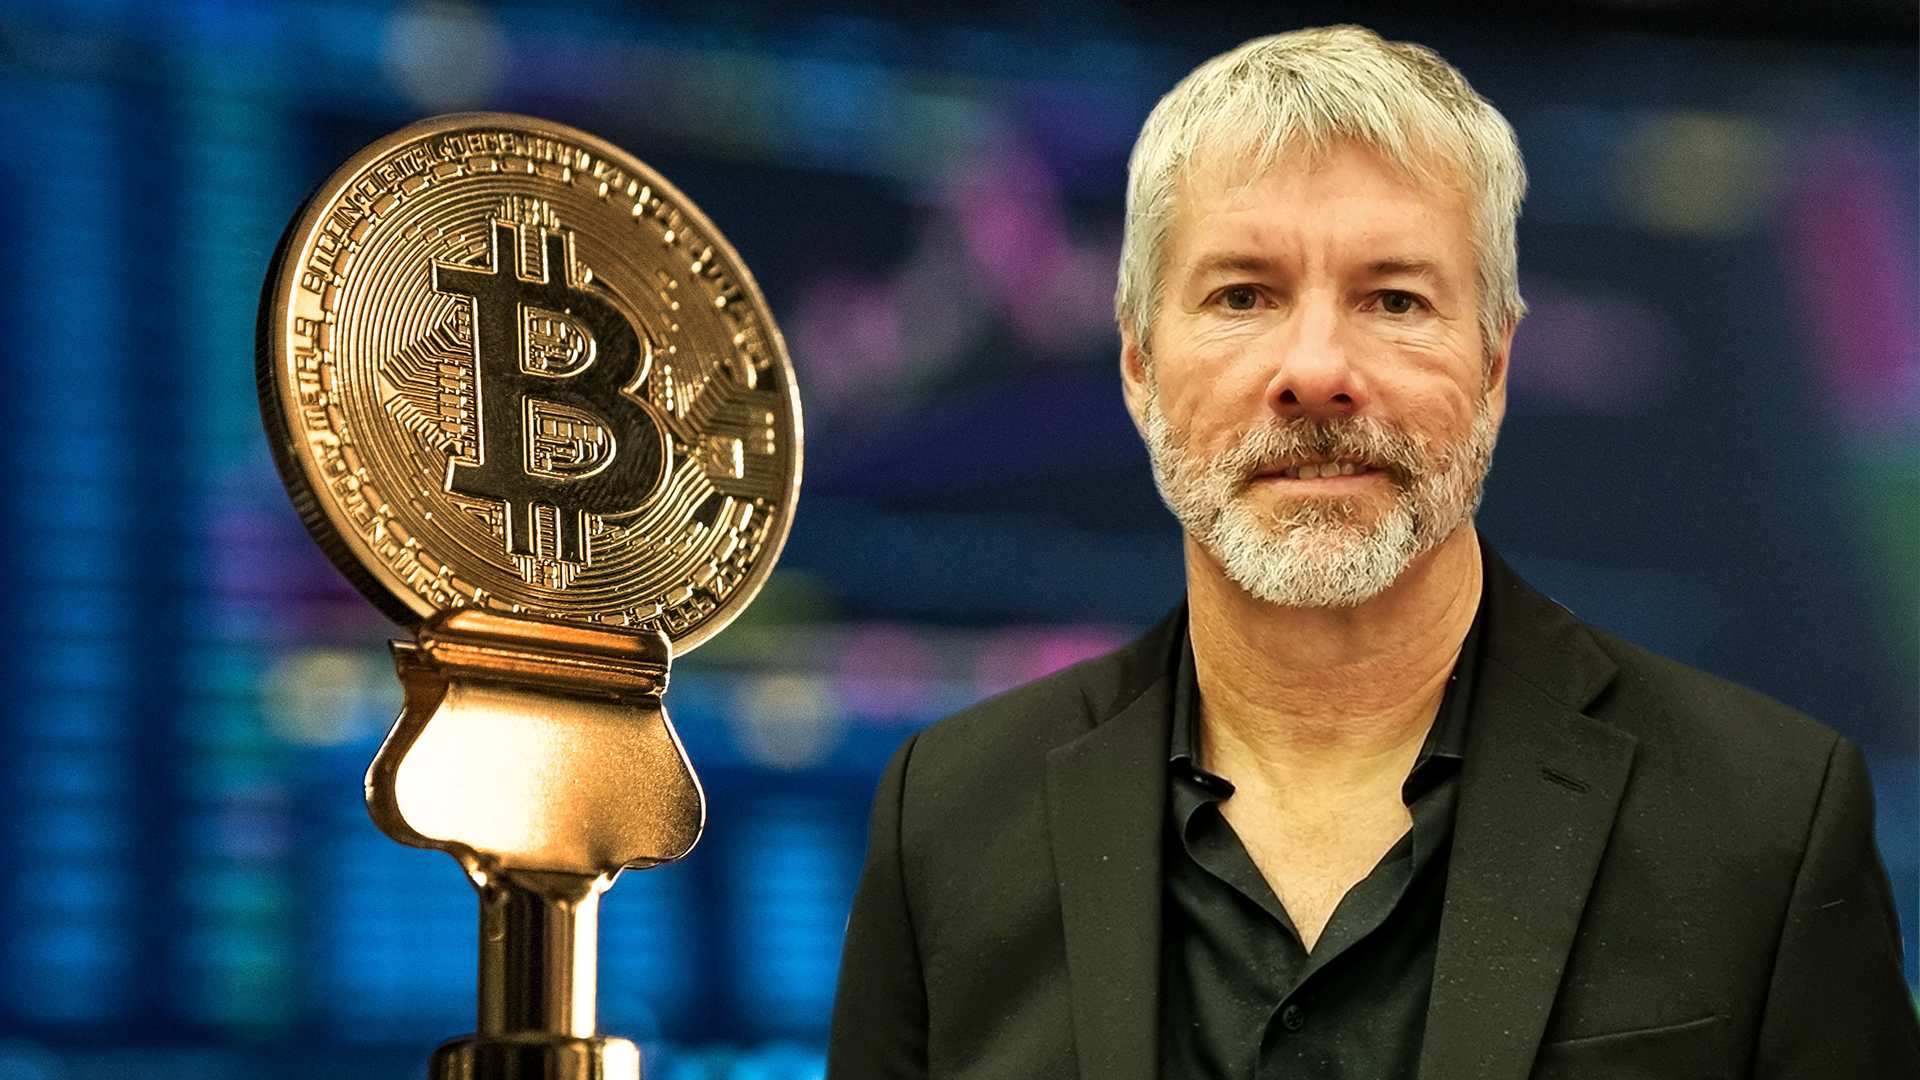 Bitcoin: Od technologii do emancypacji ekonomicznej – Wywiad z Michaelem Saylor’em